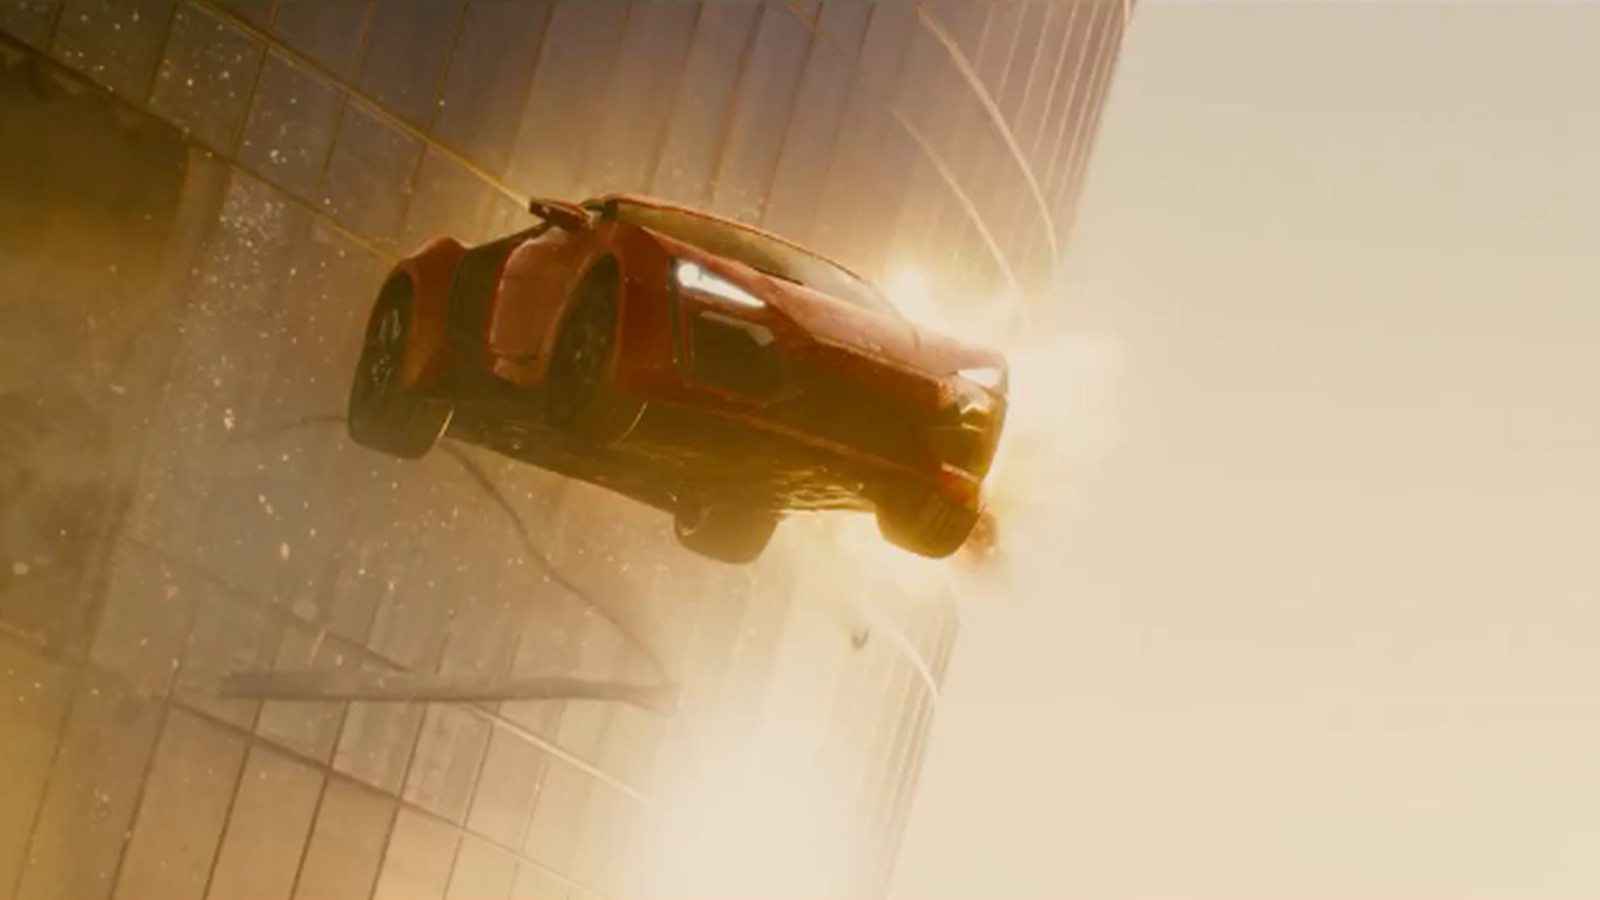 O Lykan Hypersport voador do filme Velocidade Furiosa vai a leilão